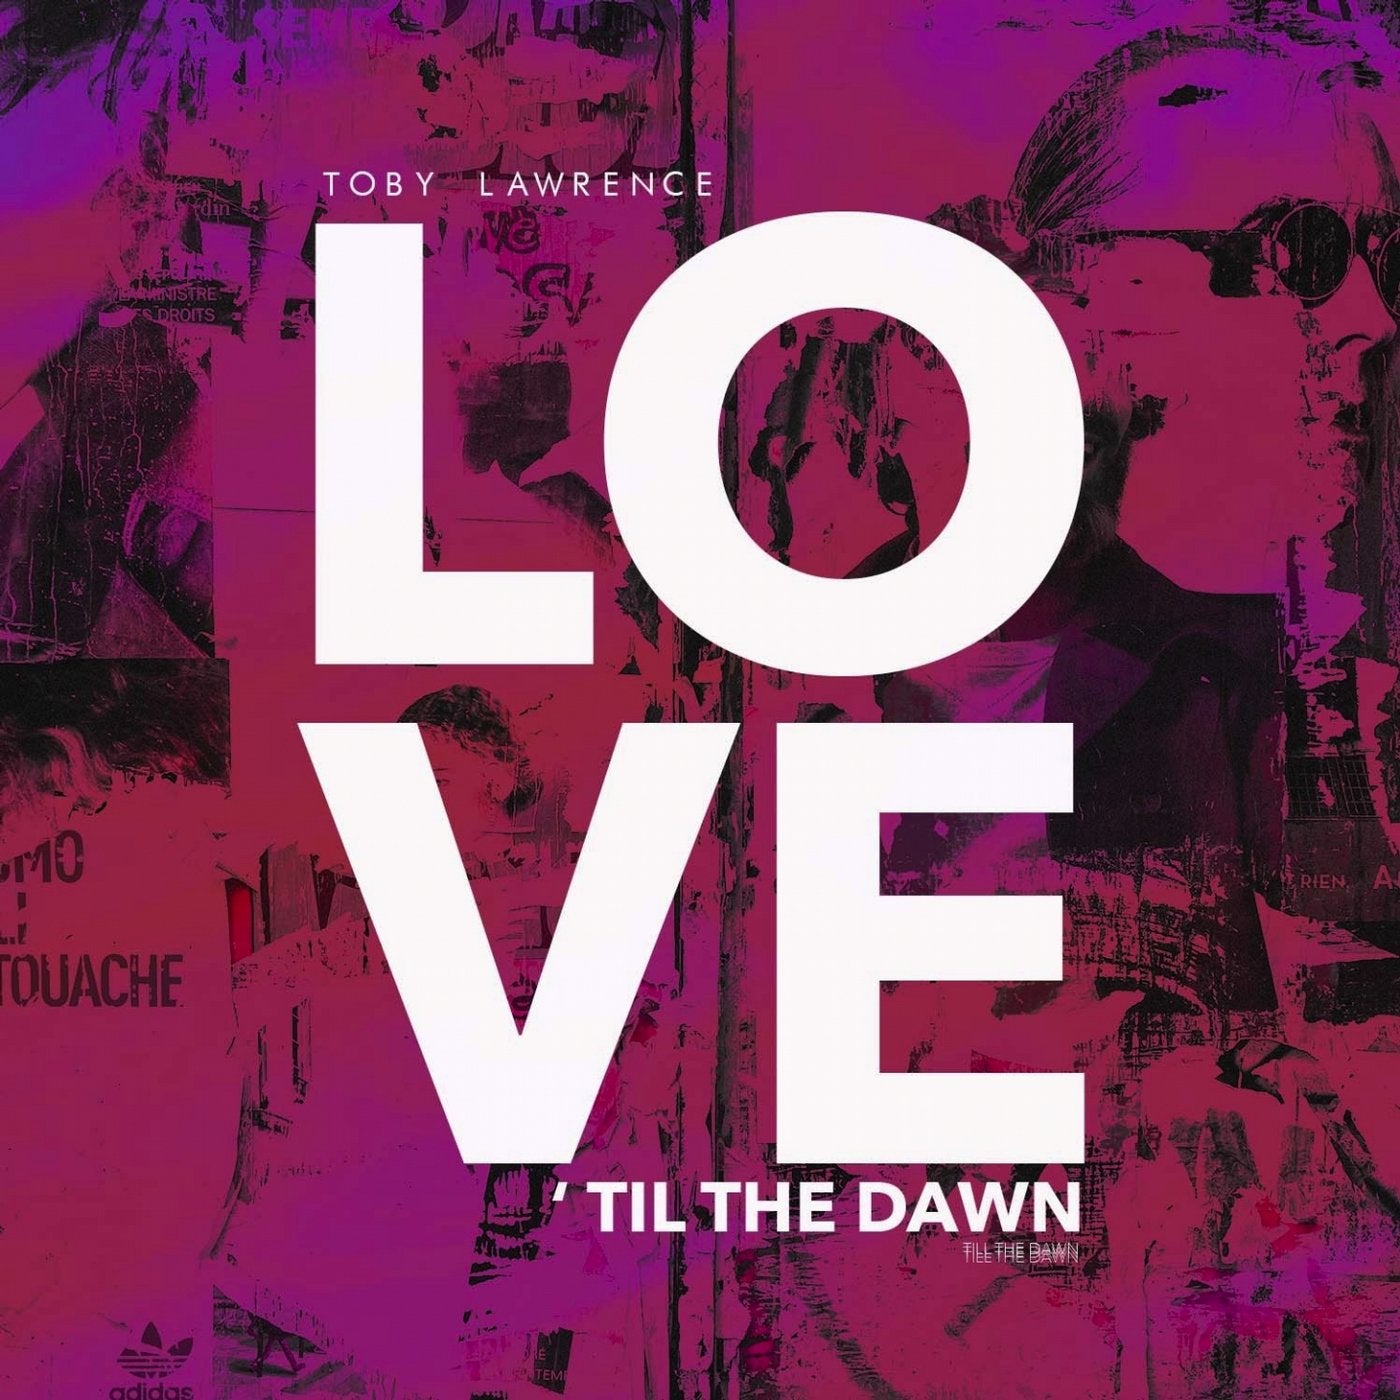 Love 'Til the Dawn